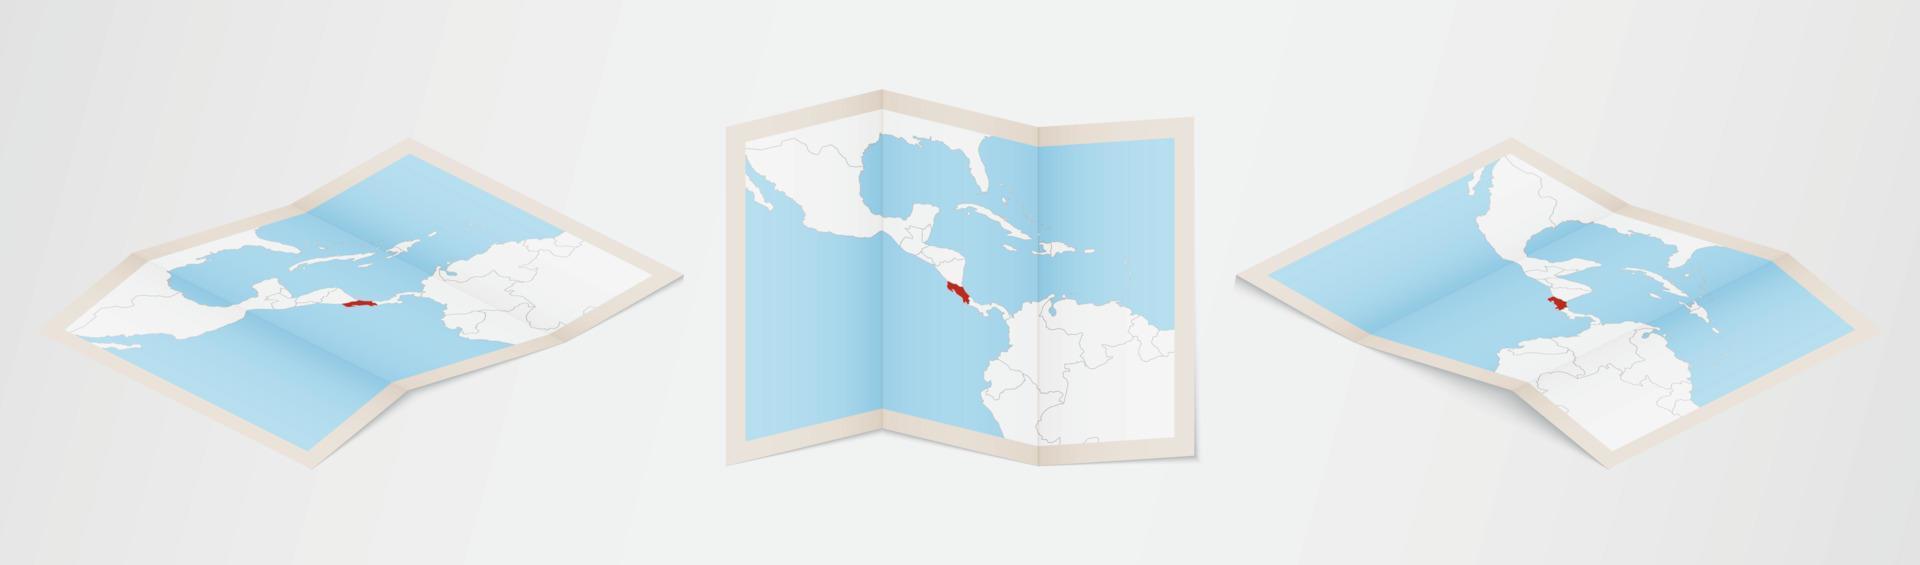 mapa plegado de costa rica en tres versiones diferentes. vector